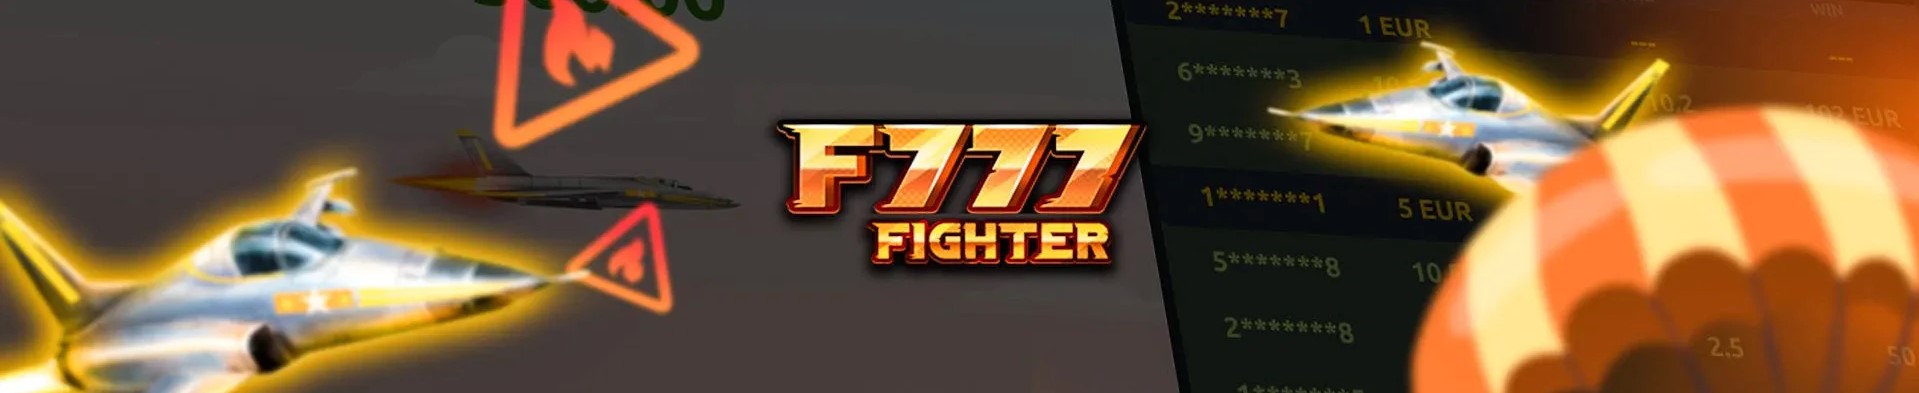 F777 fighter mäng.